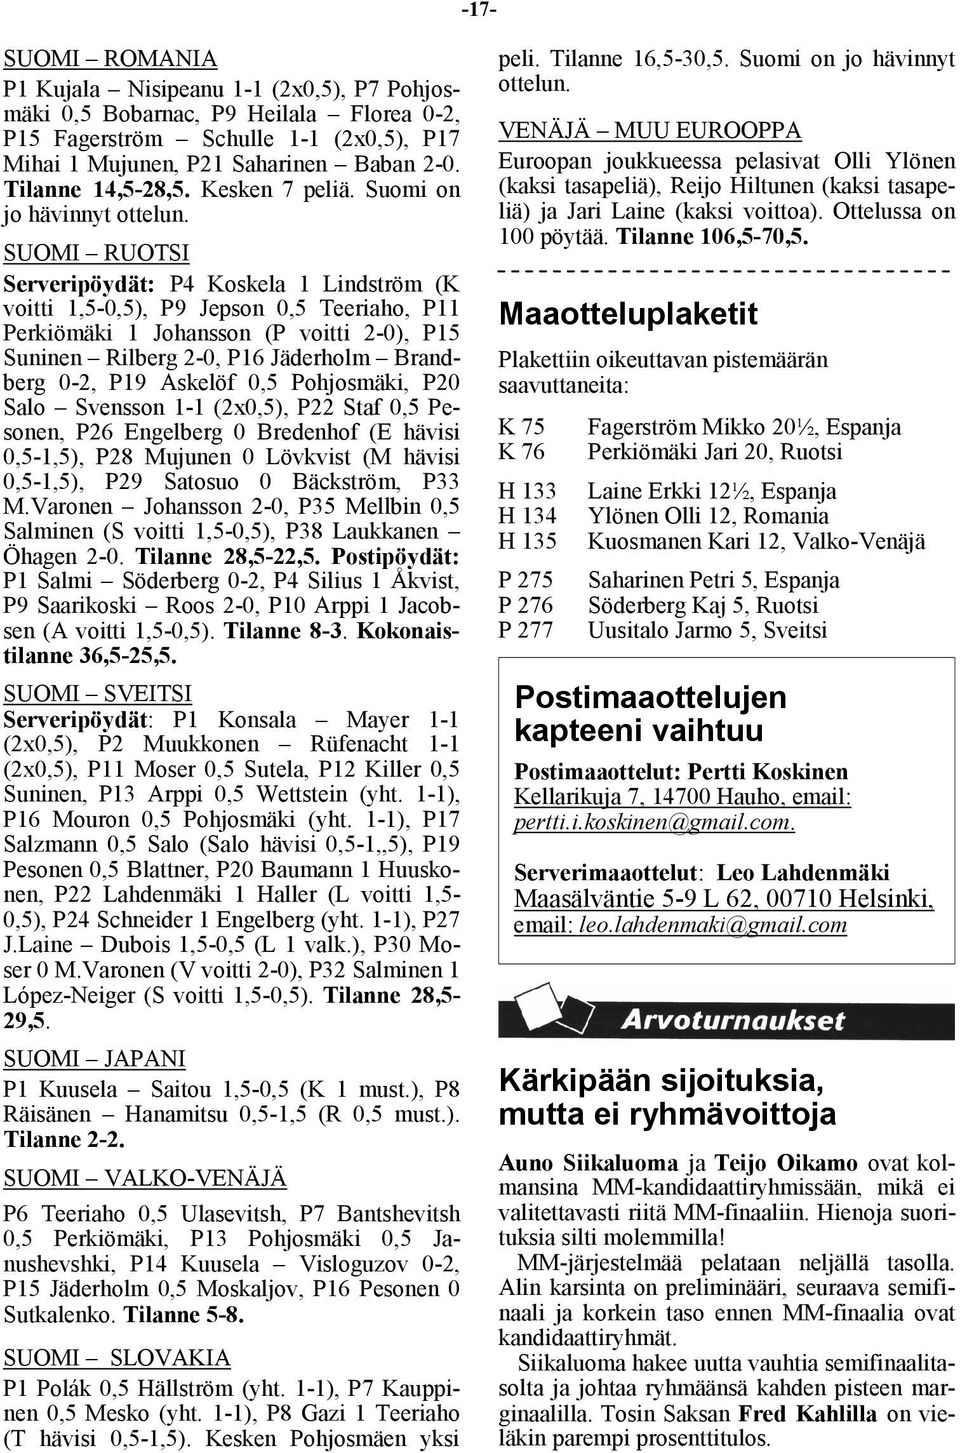 SUOMI RUOTSI Serveripöydät: P4 Koskela 1 Lindström (K voitti 1,5-0,5), P9 Jepson 0,5 Teeriaho, P11 Perkiömäki 1 Johansson (P voitti 2-0), P15 Suninen Rilberg 2-0, P16 Jäderholm Brandberg 0-2, P19